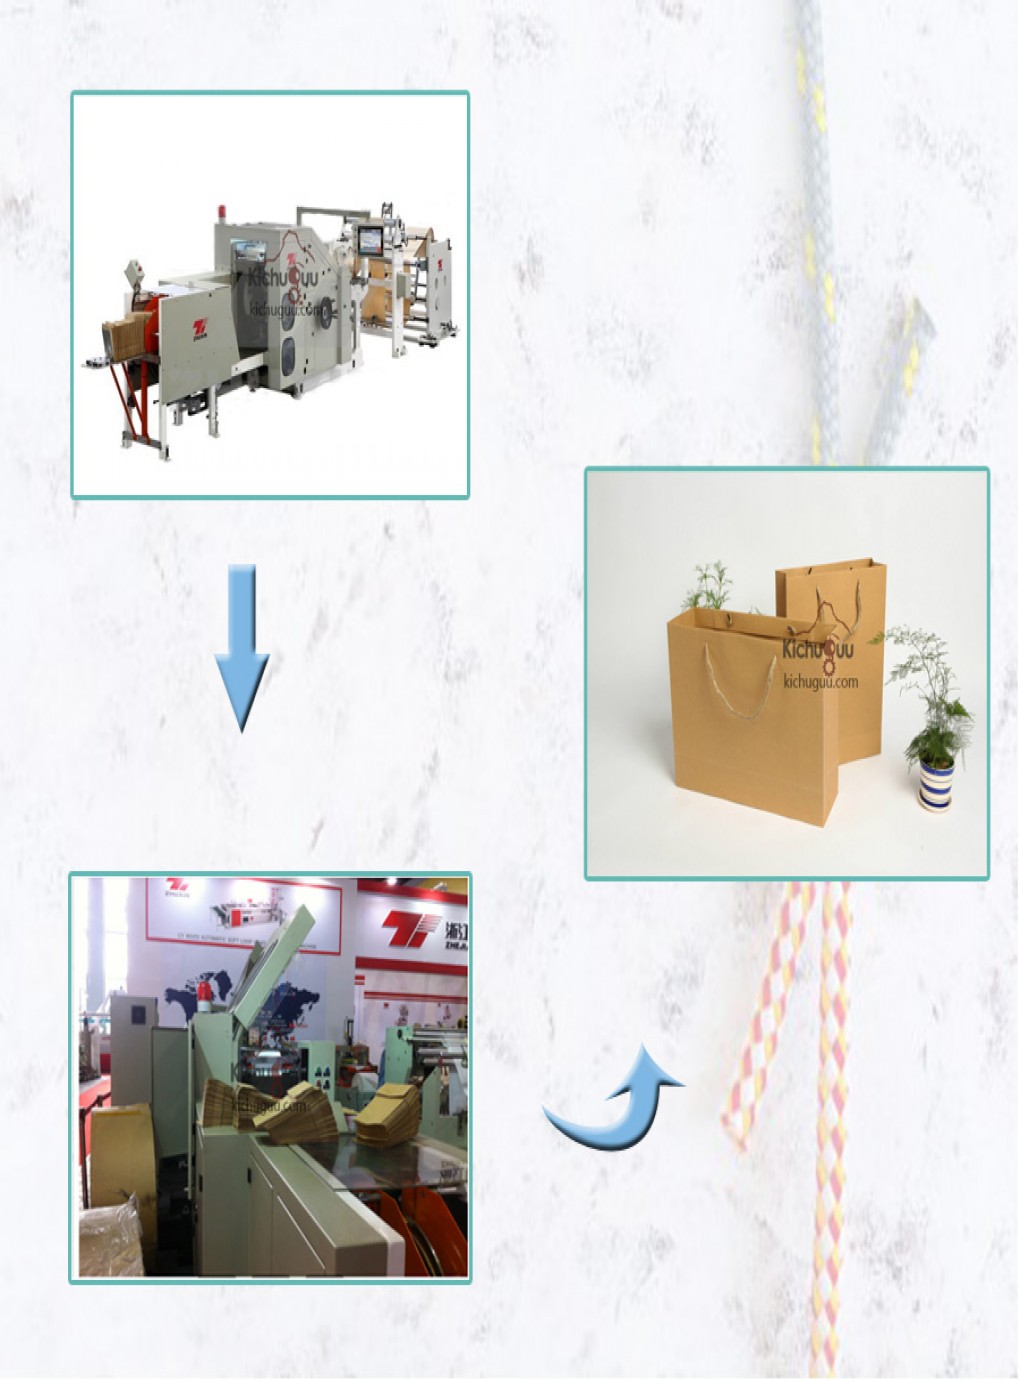 paper bag production line